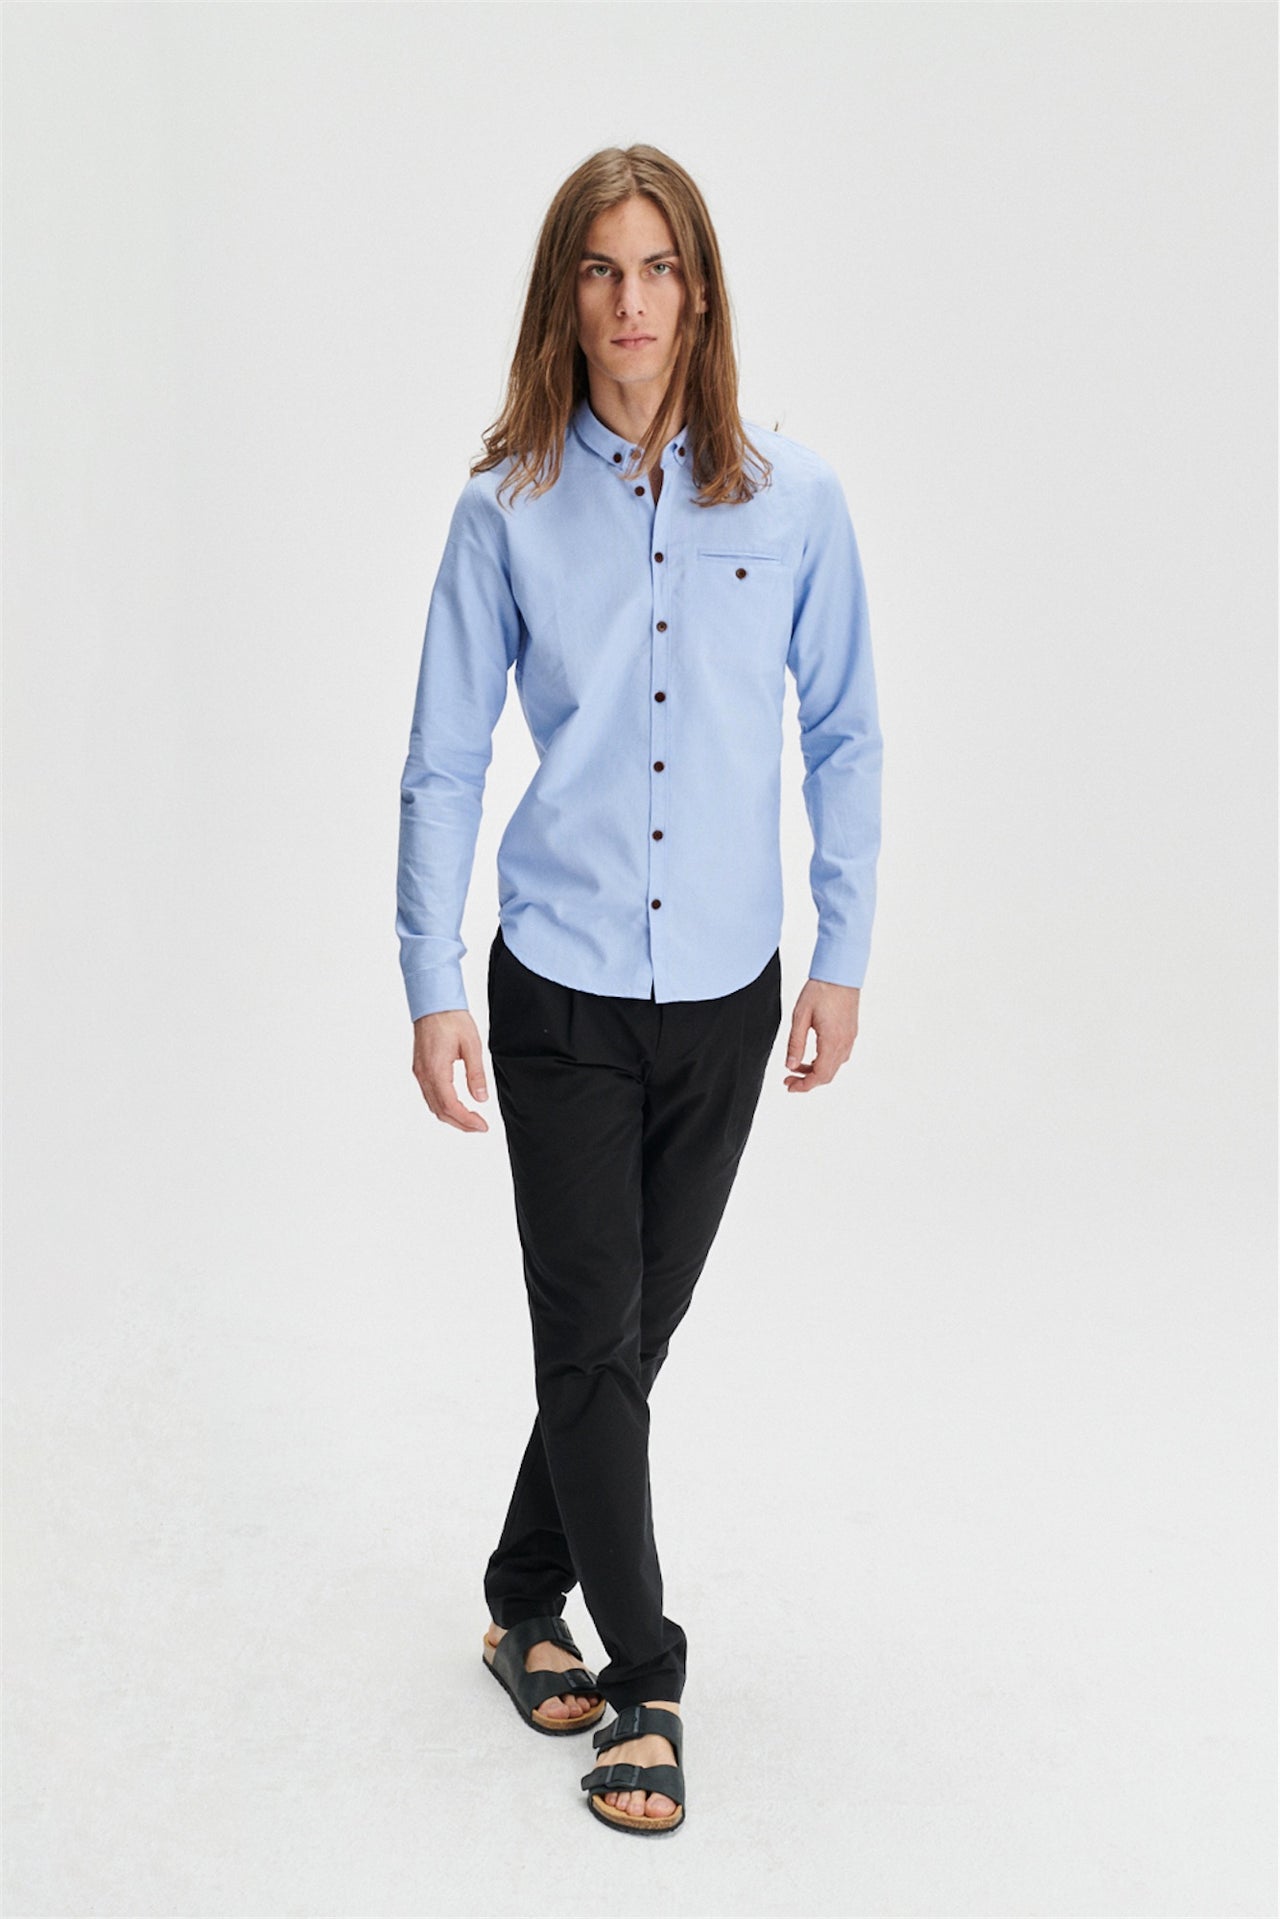 最高級のブルーポルトガルオックスフォードコットンを使用した木製ボタン付きの適切なシャツ